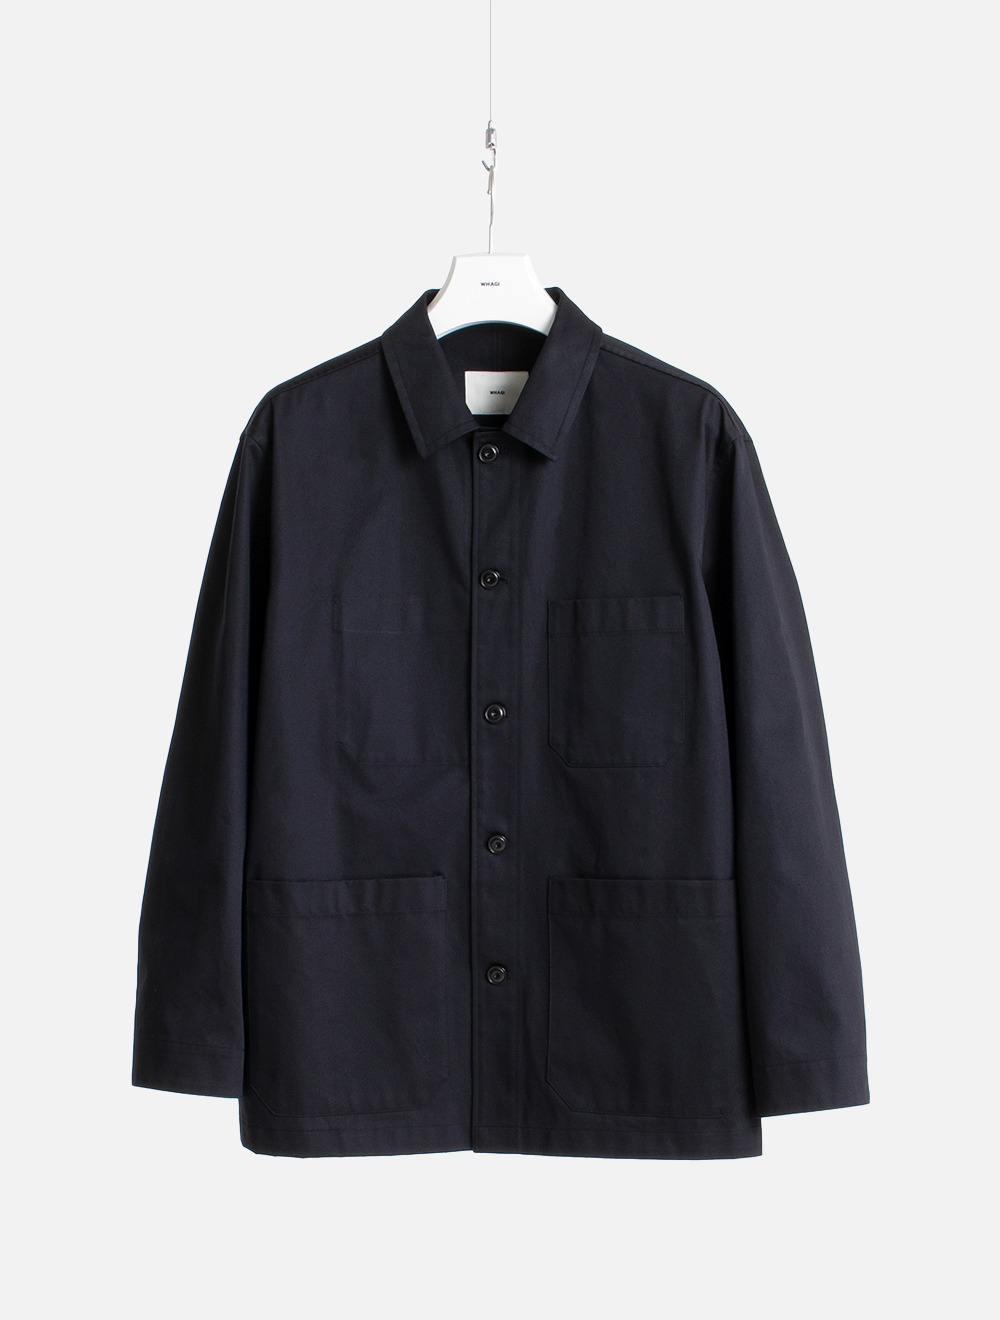 Work Jacket (Dark Navy)